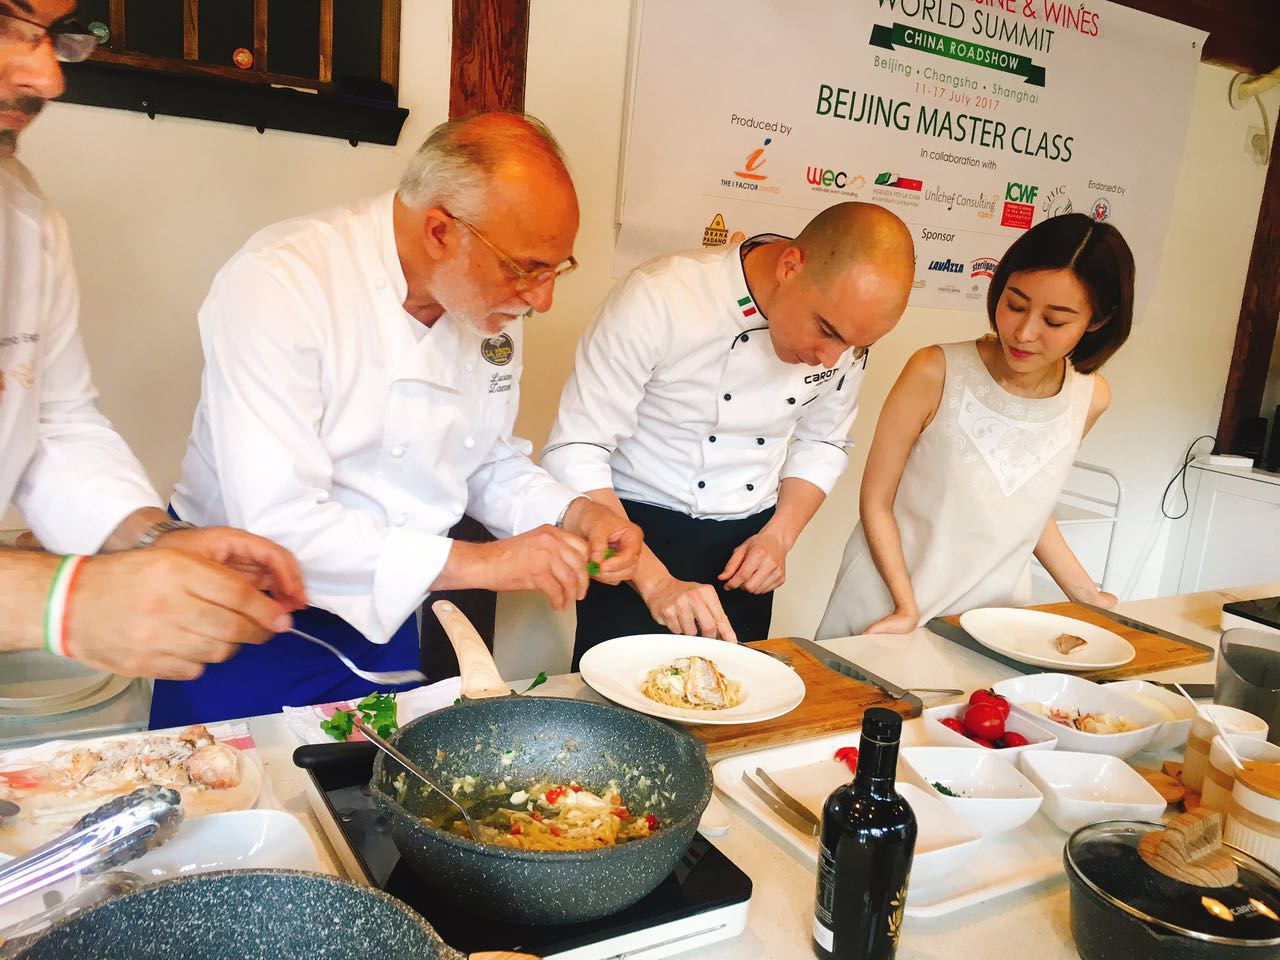 热情7月,意大利厨师协会中国分会邀您一同参